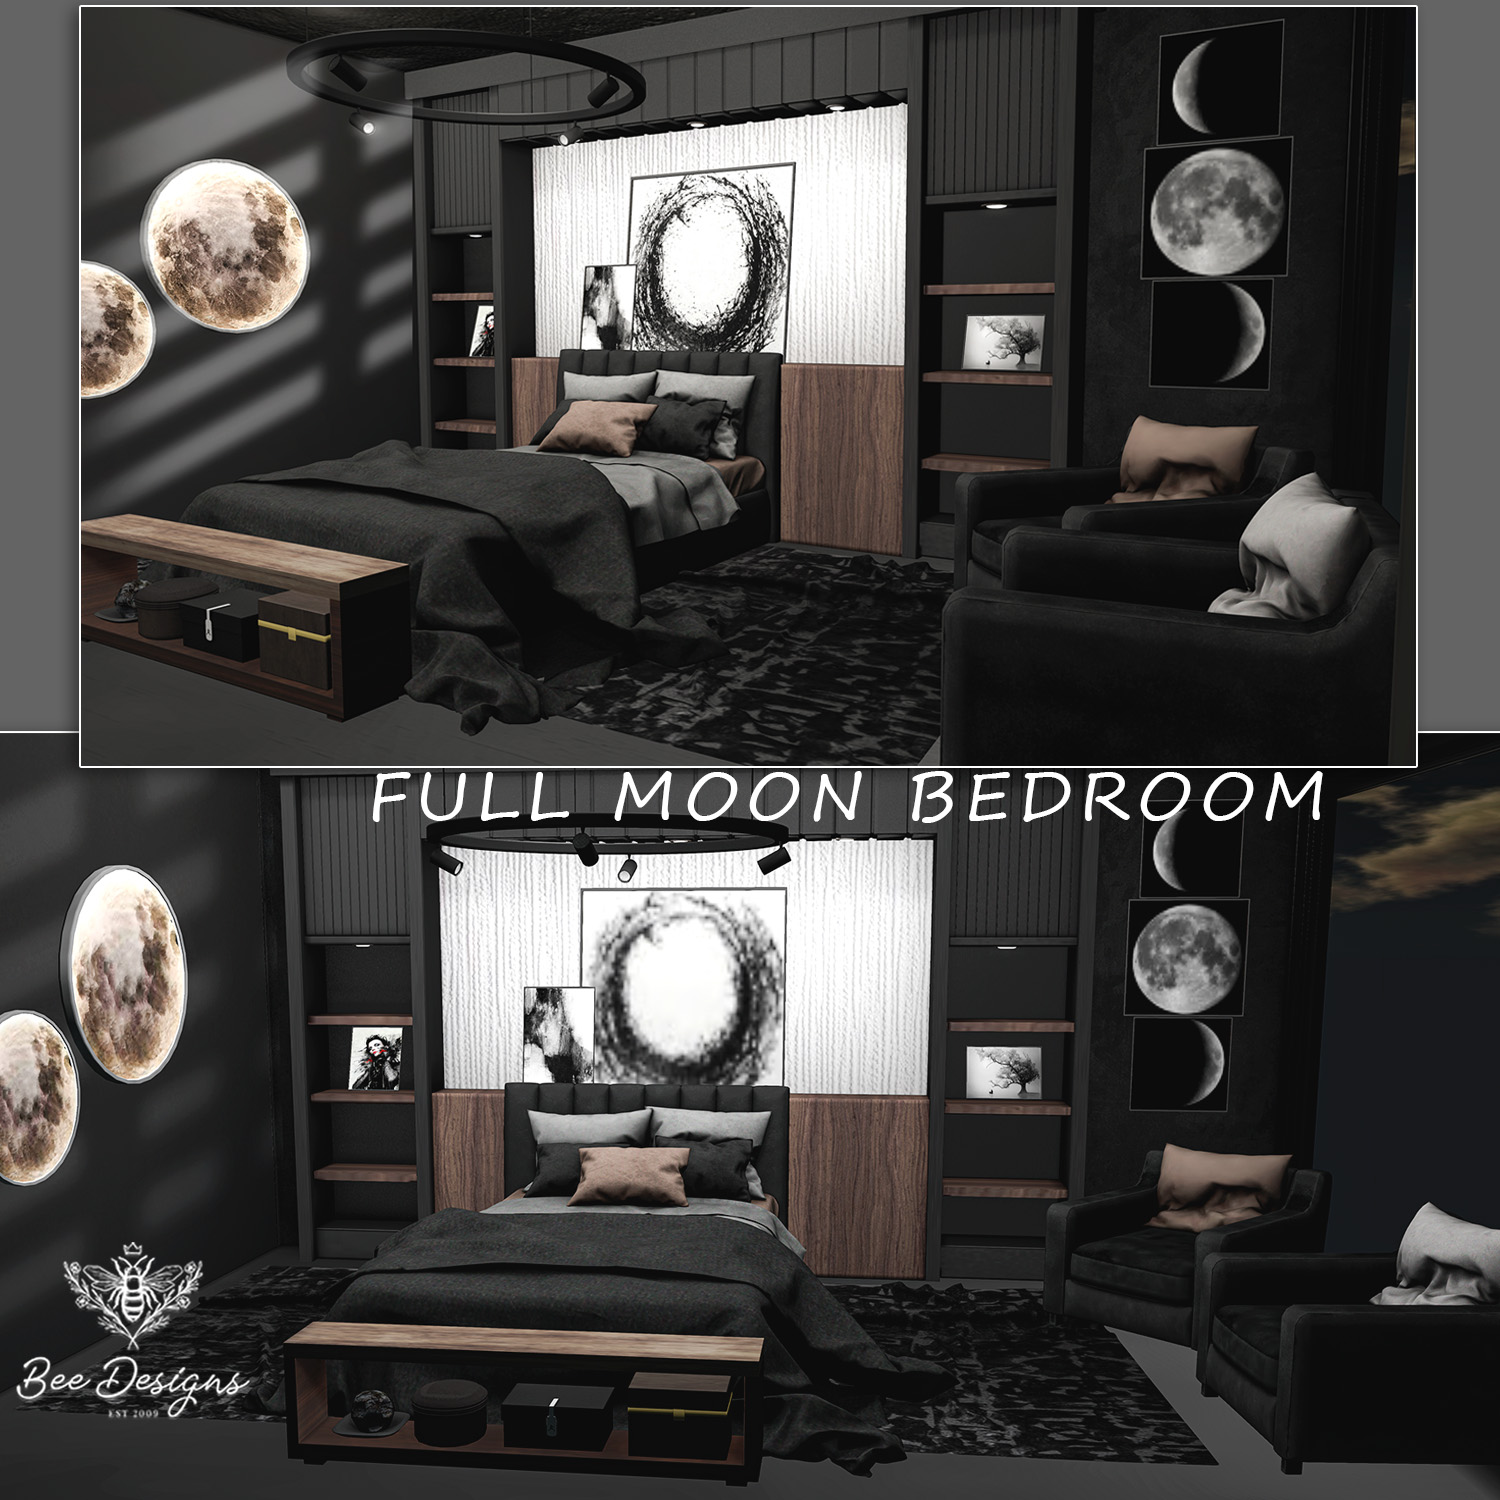 Bee Designs – Full Moon Bedroom